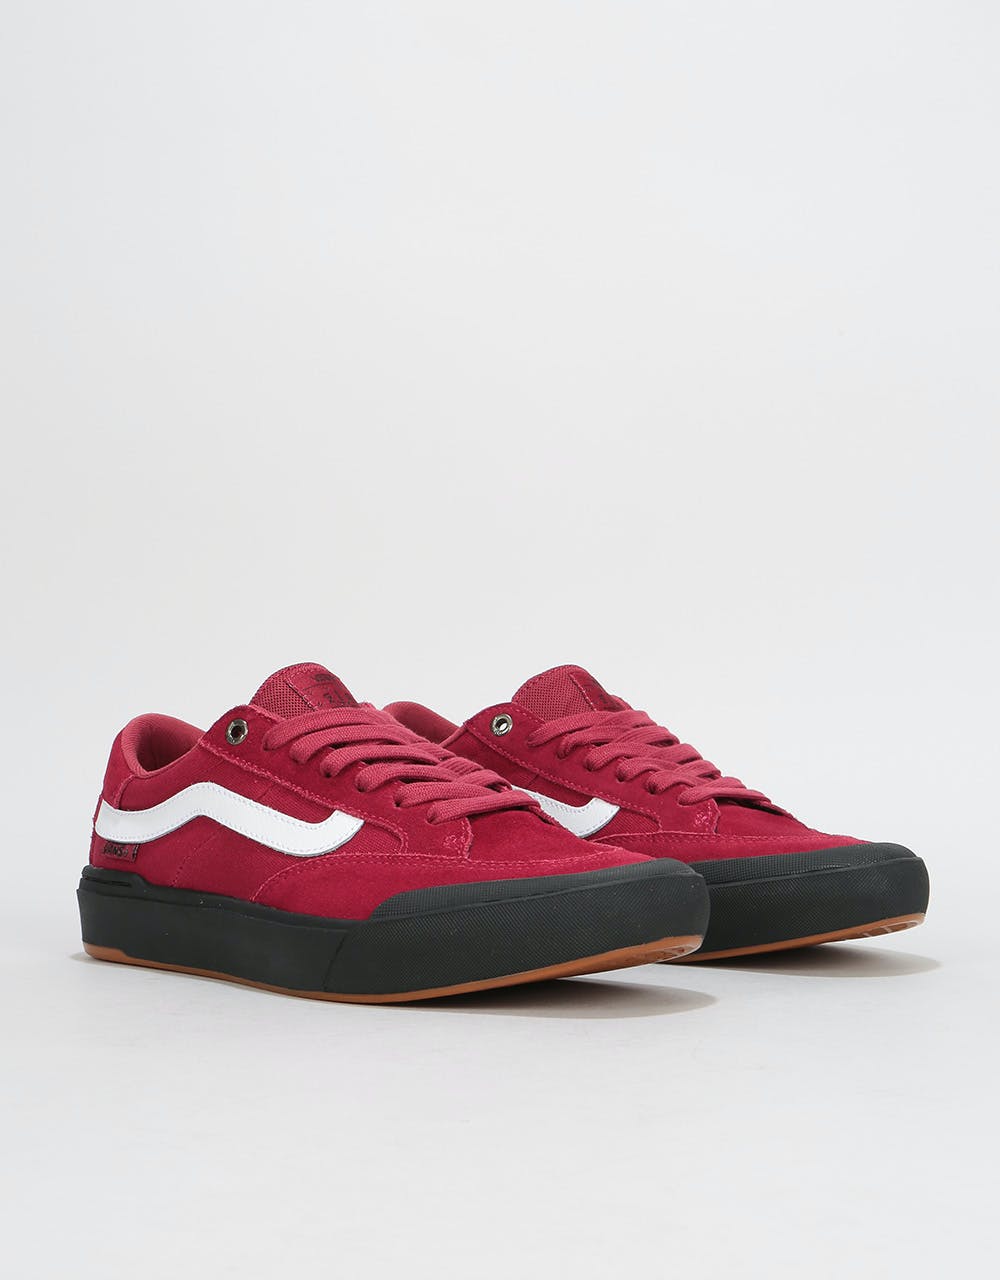 Vans Berle Pro Skate Shoes - Rumba Red